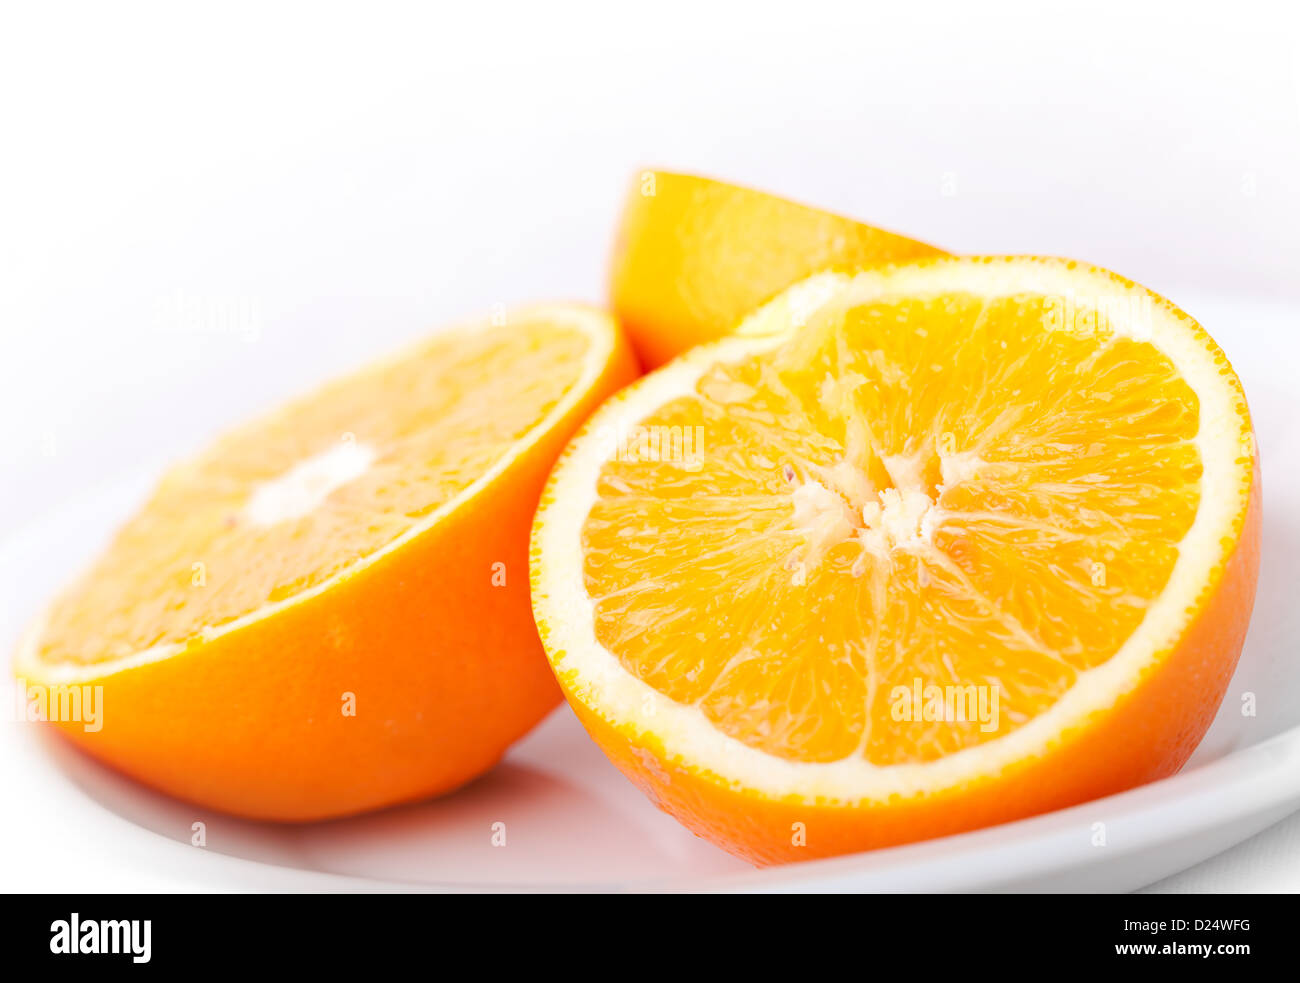 Sliced fresh orange fruit on white background Stock Photo